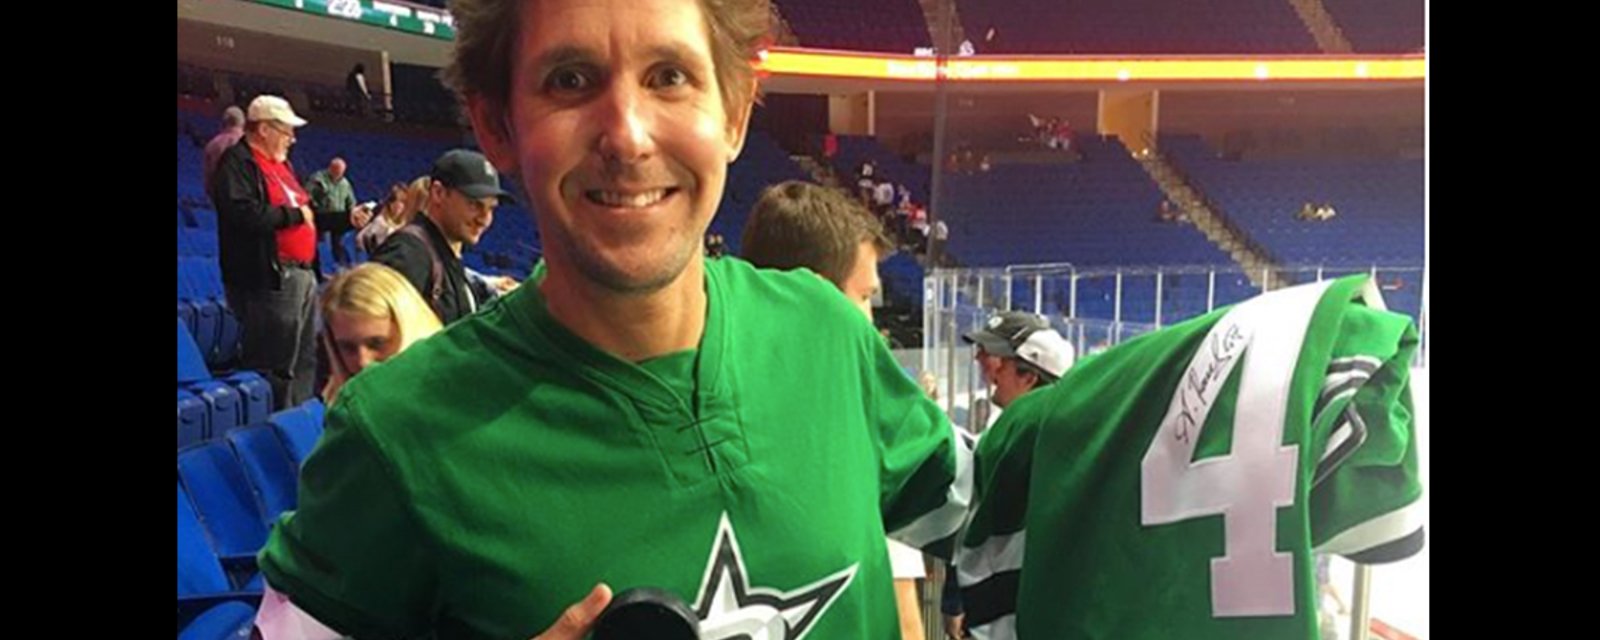 Stars’ Radulov wore a replica jersey off a fan’s back for preseason game 